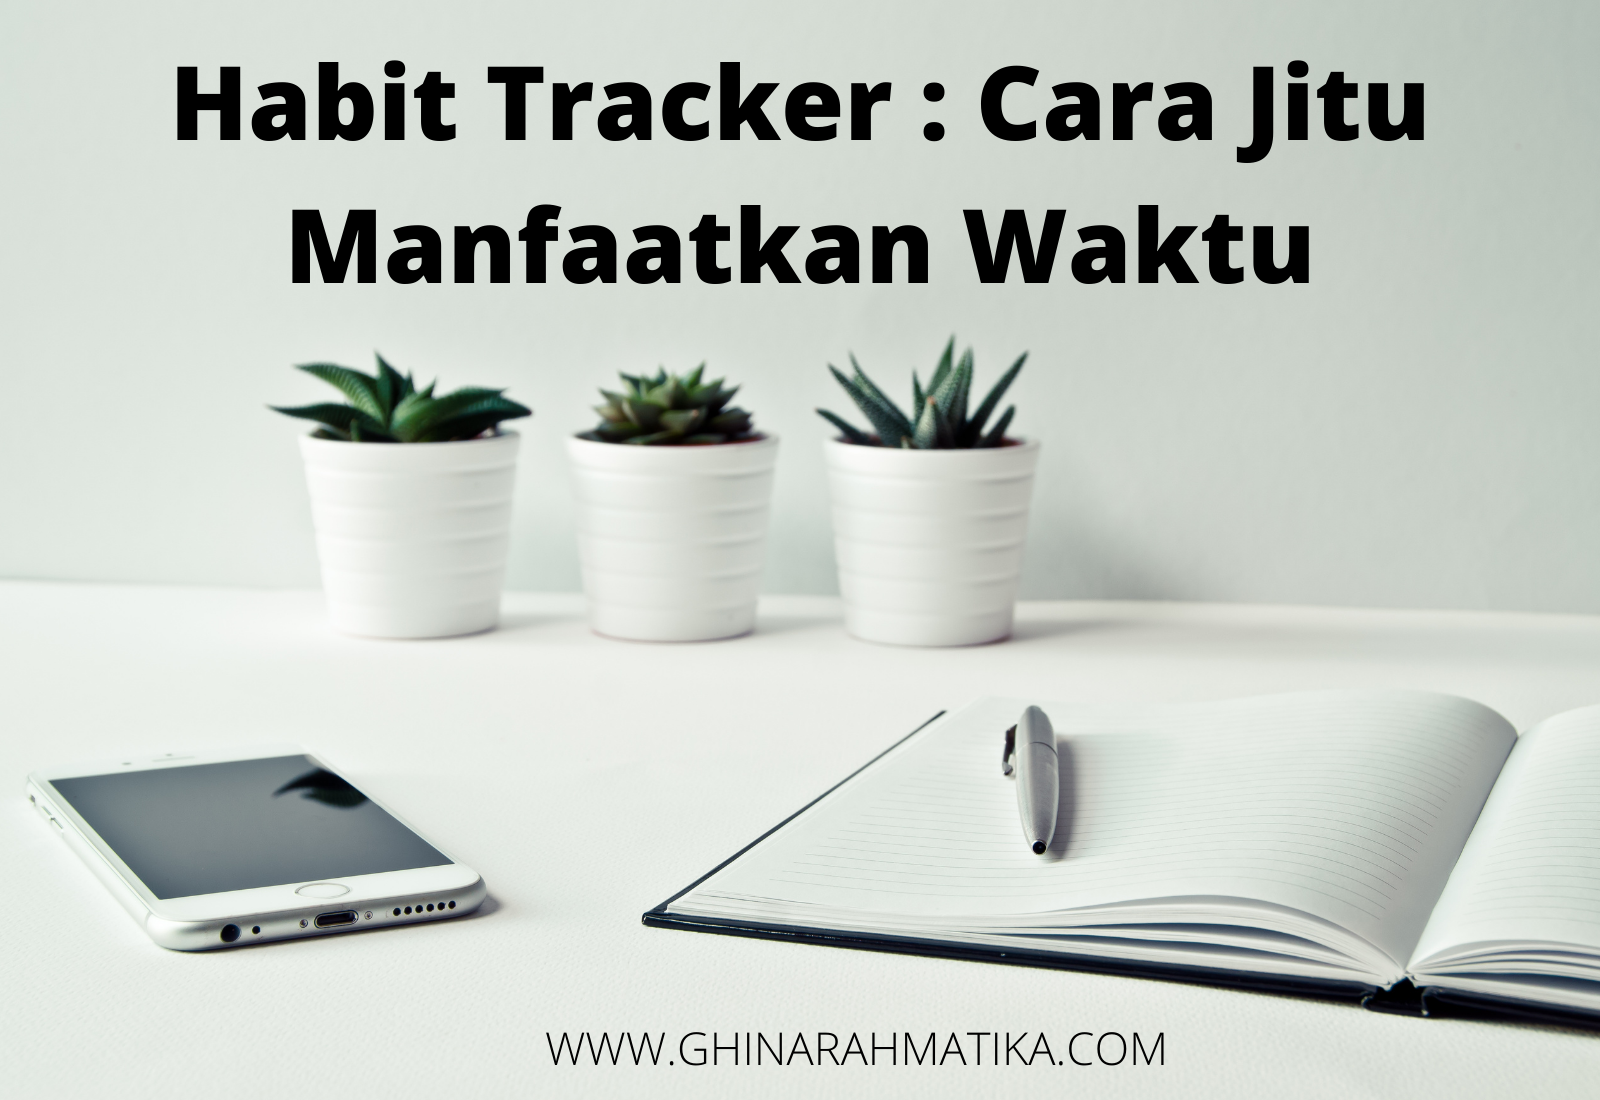 habit tracker adalah melakukan kegiatan tracking pada kegiatan yang ingin dijadikan kebiasaan